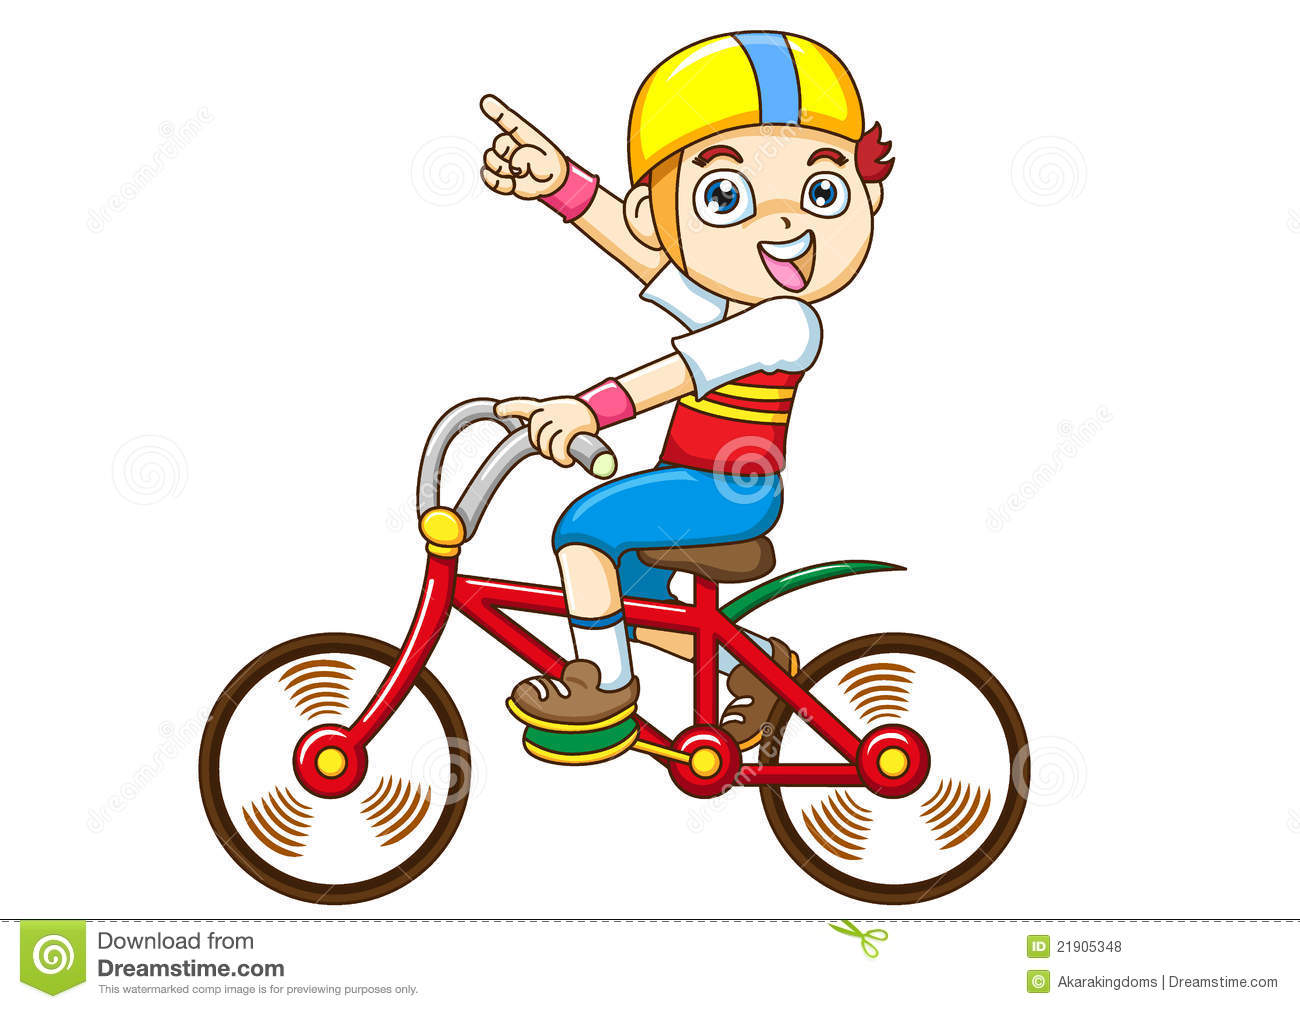 bike clipart child's